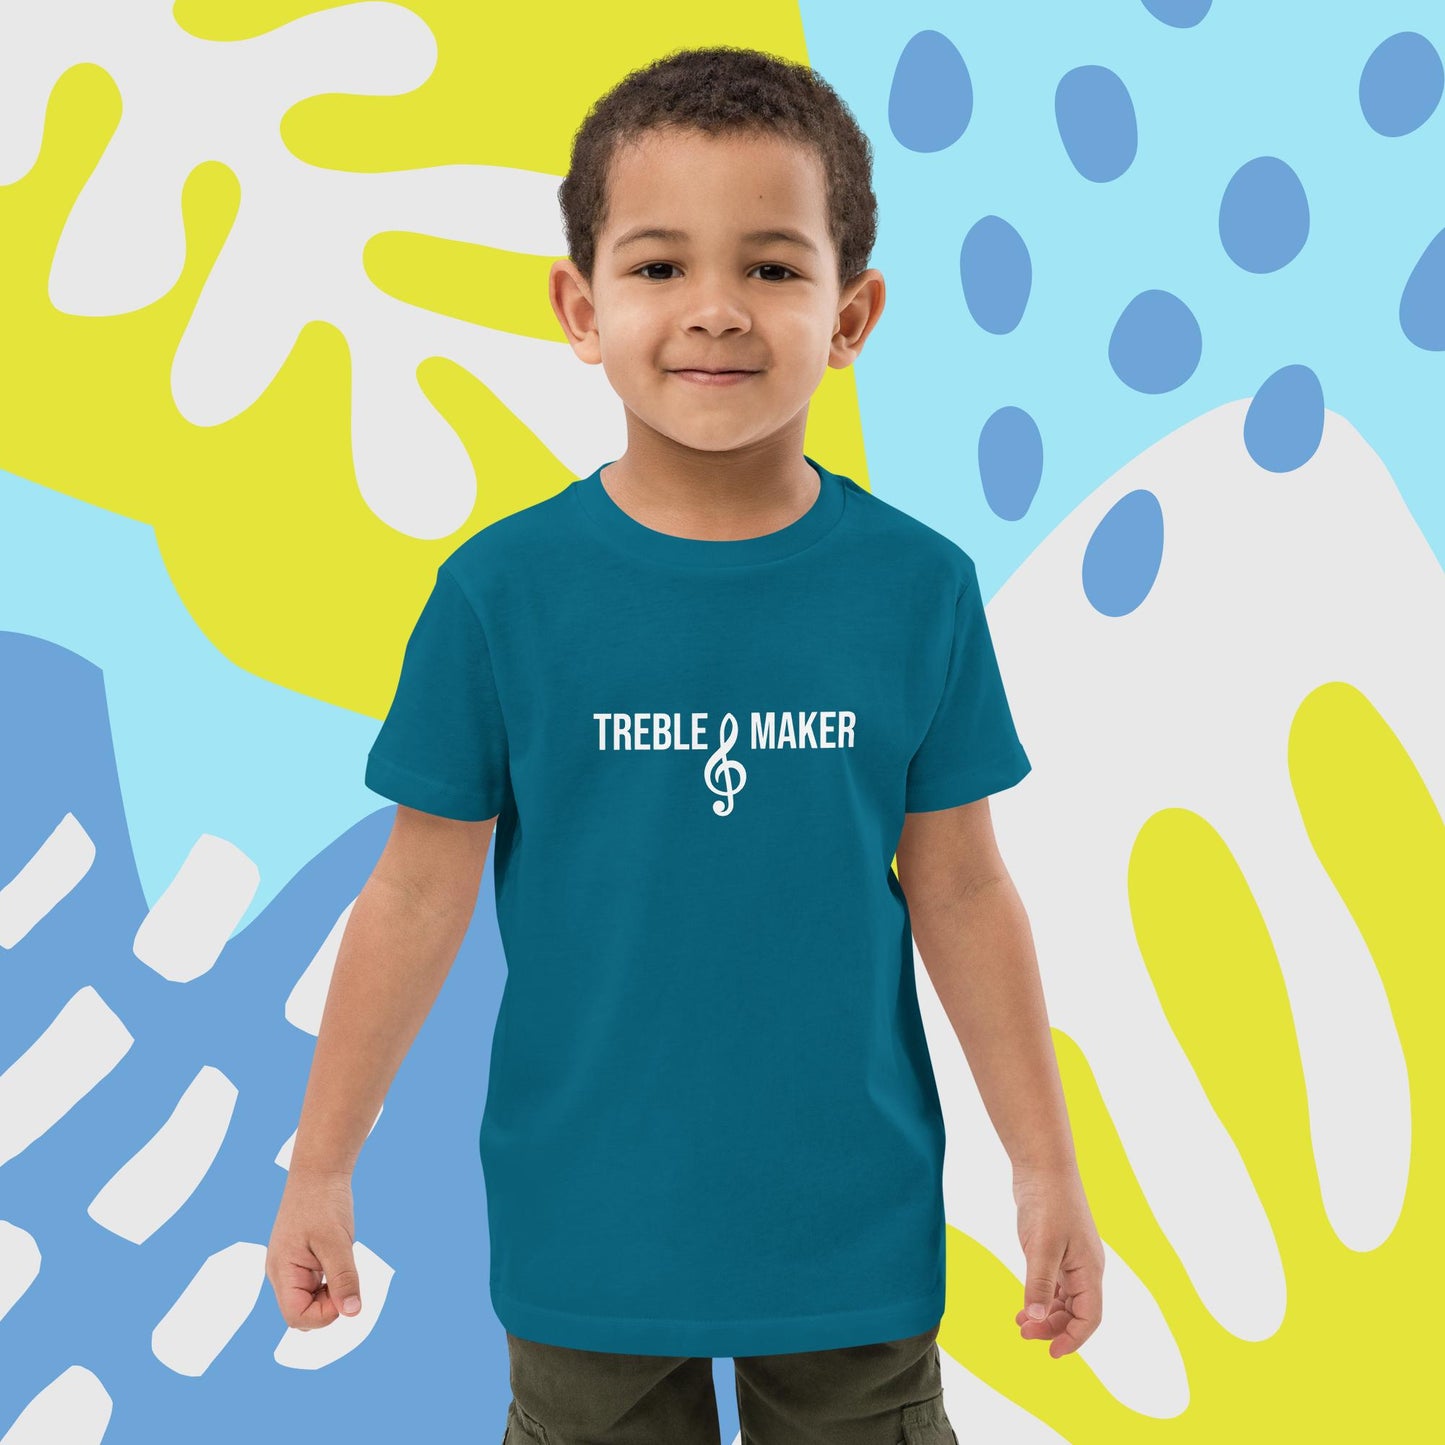 Treble maker. Organic cotton t-shirt for kids